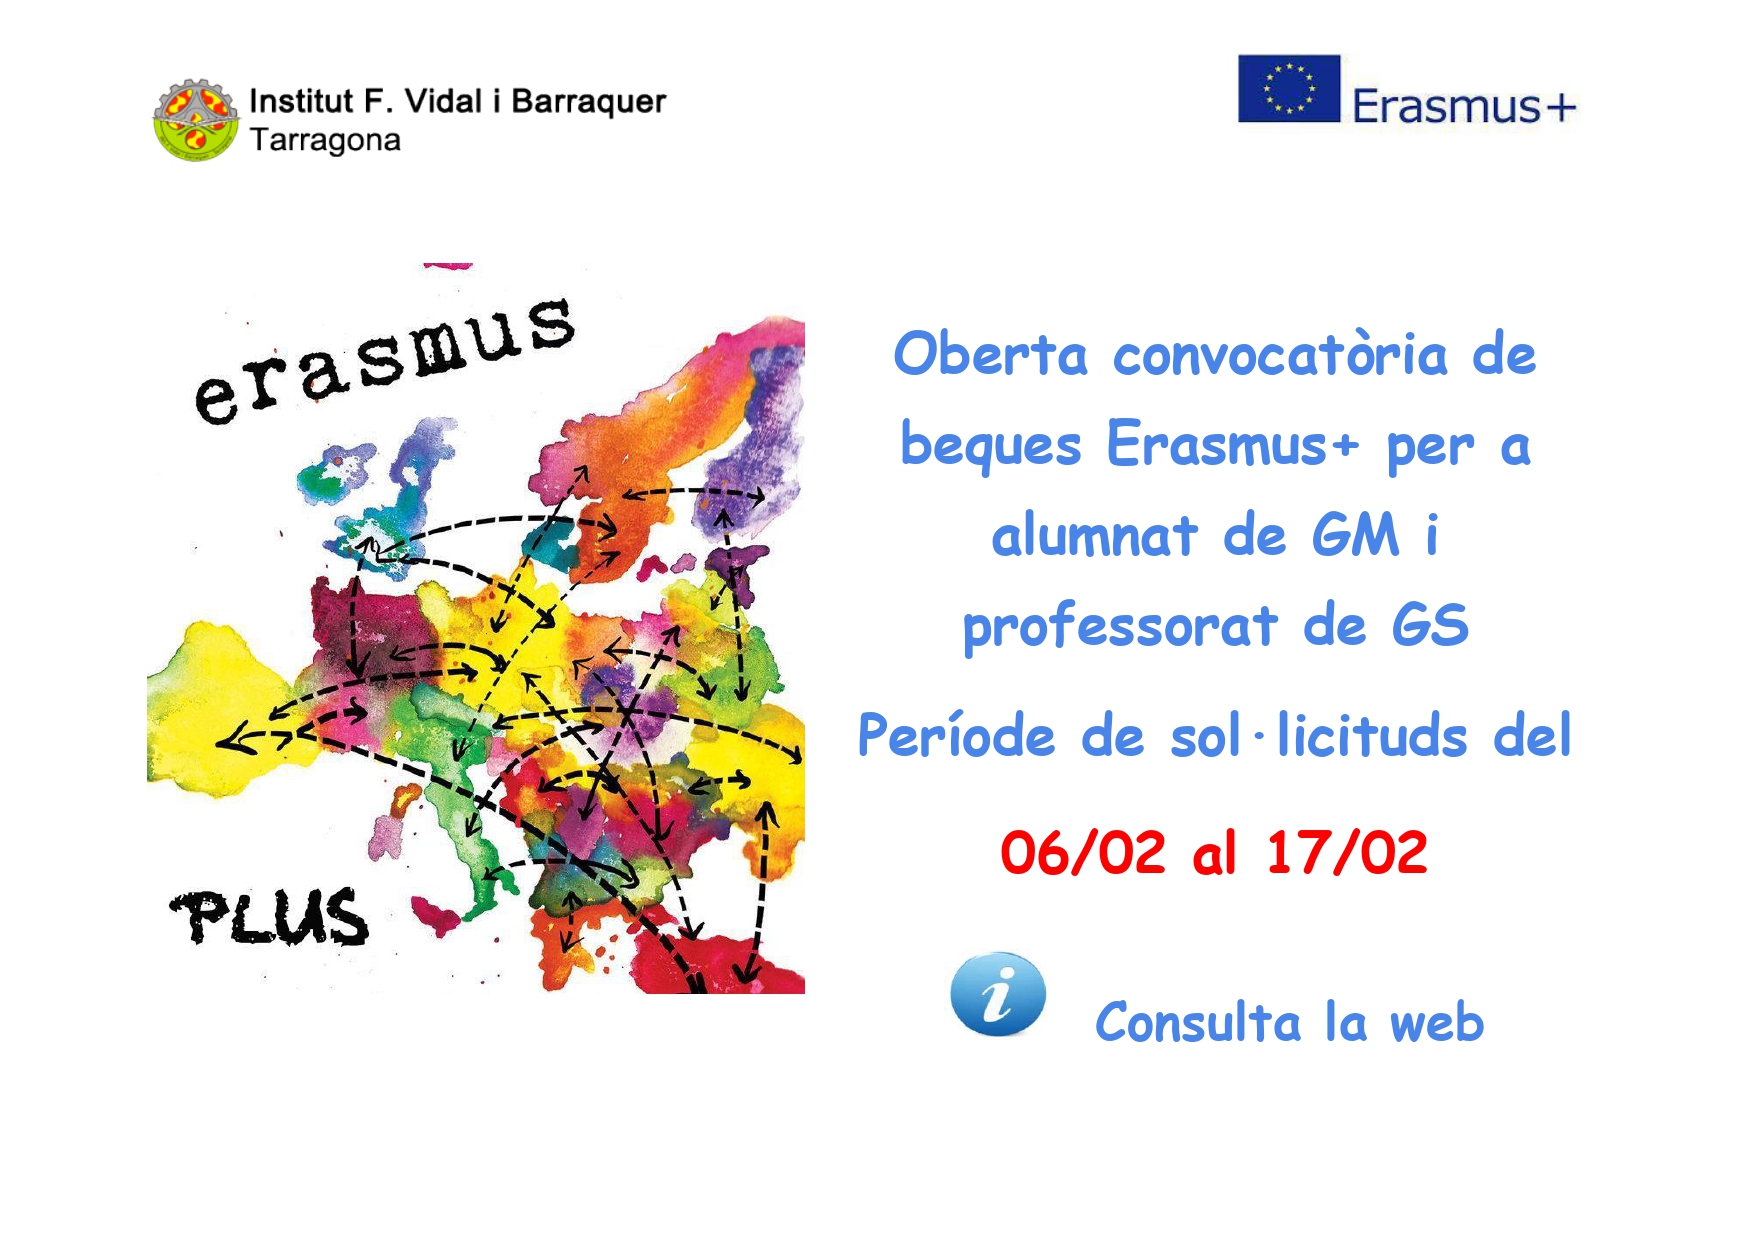 Beques Erasmus+ per alumnat de GM i professorat de GS